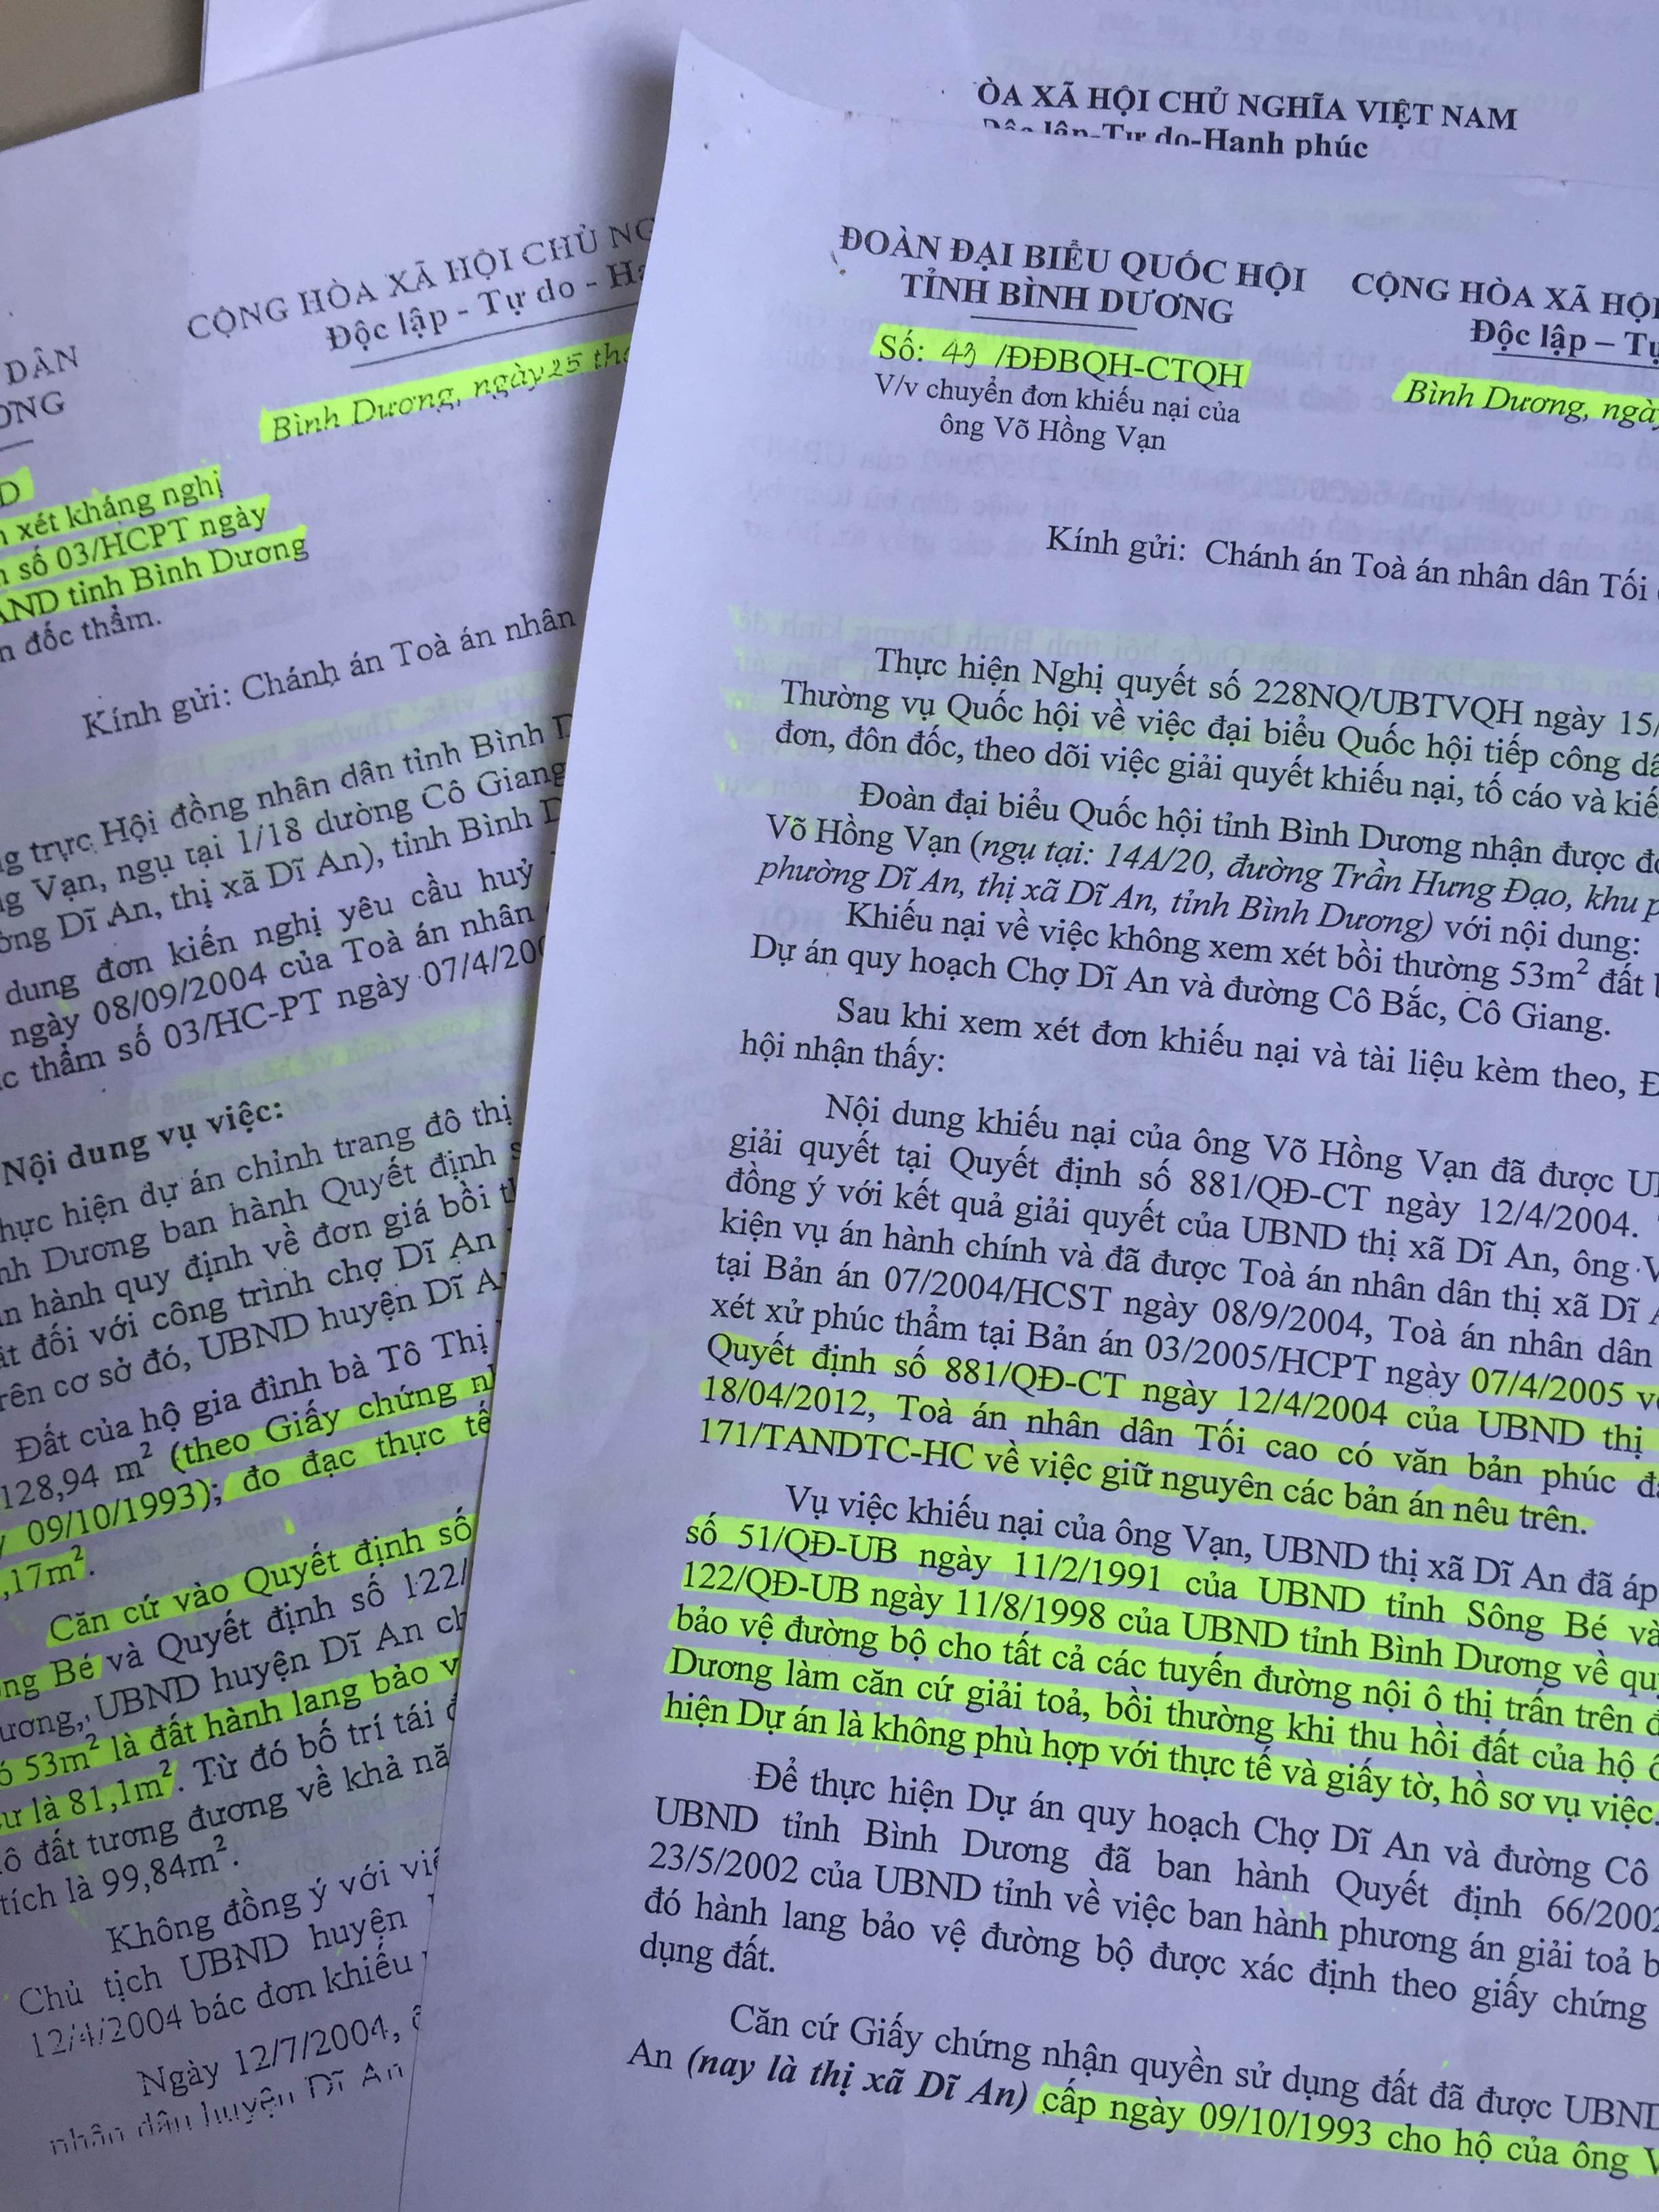 Hàng loạt văn bản của Đoàn Đại biểu quốc hội, HĐND tỉnh Bình Dương gửi TANDTC, VKSNDTC đề nghị xem xét lại bản án hành chính đối với trường hợp của ông Võ Hồng Vạn